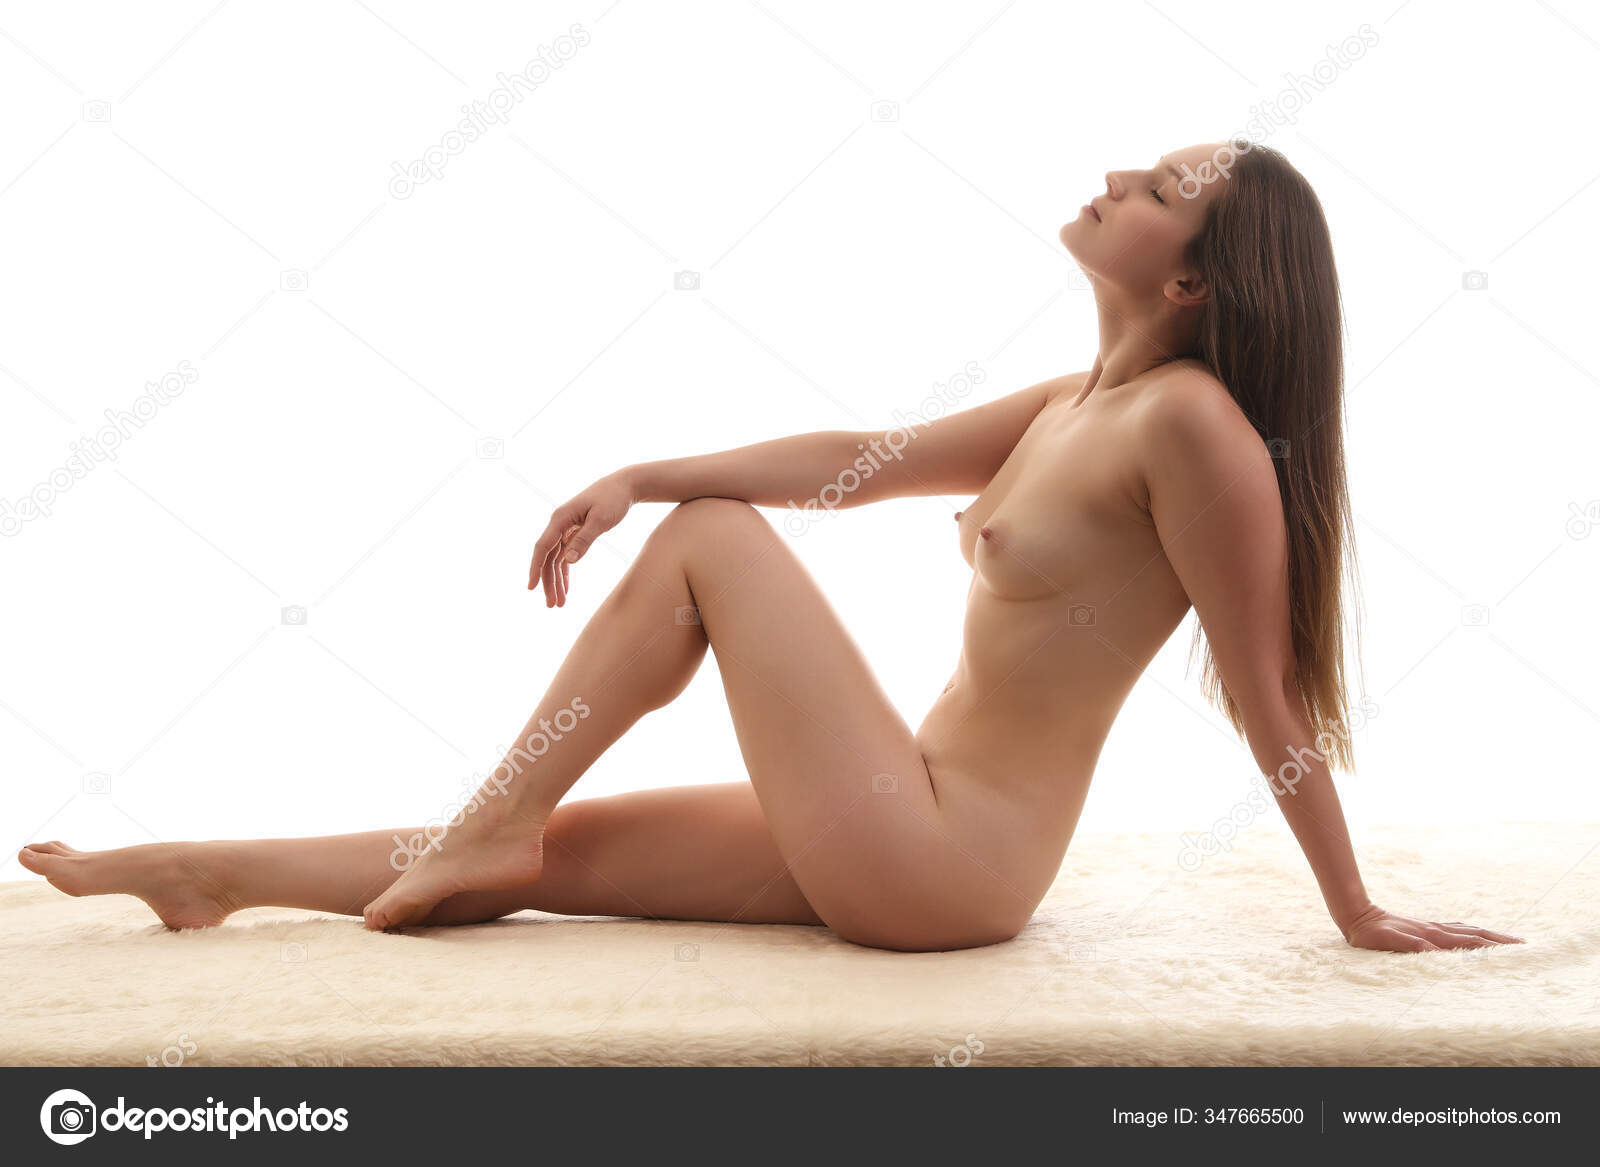 https://st3n.depositphotos.com/2970081/34766/i/1600/depositphotos_347665500-stock-photo-young-sexy-girl-nude-beautiful.jpg